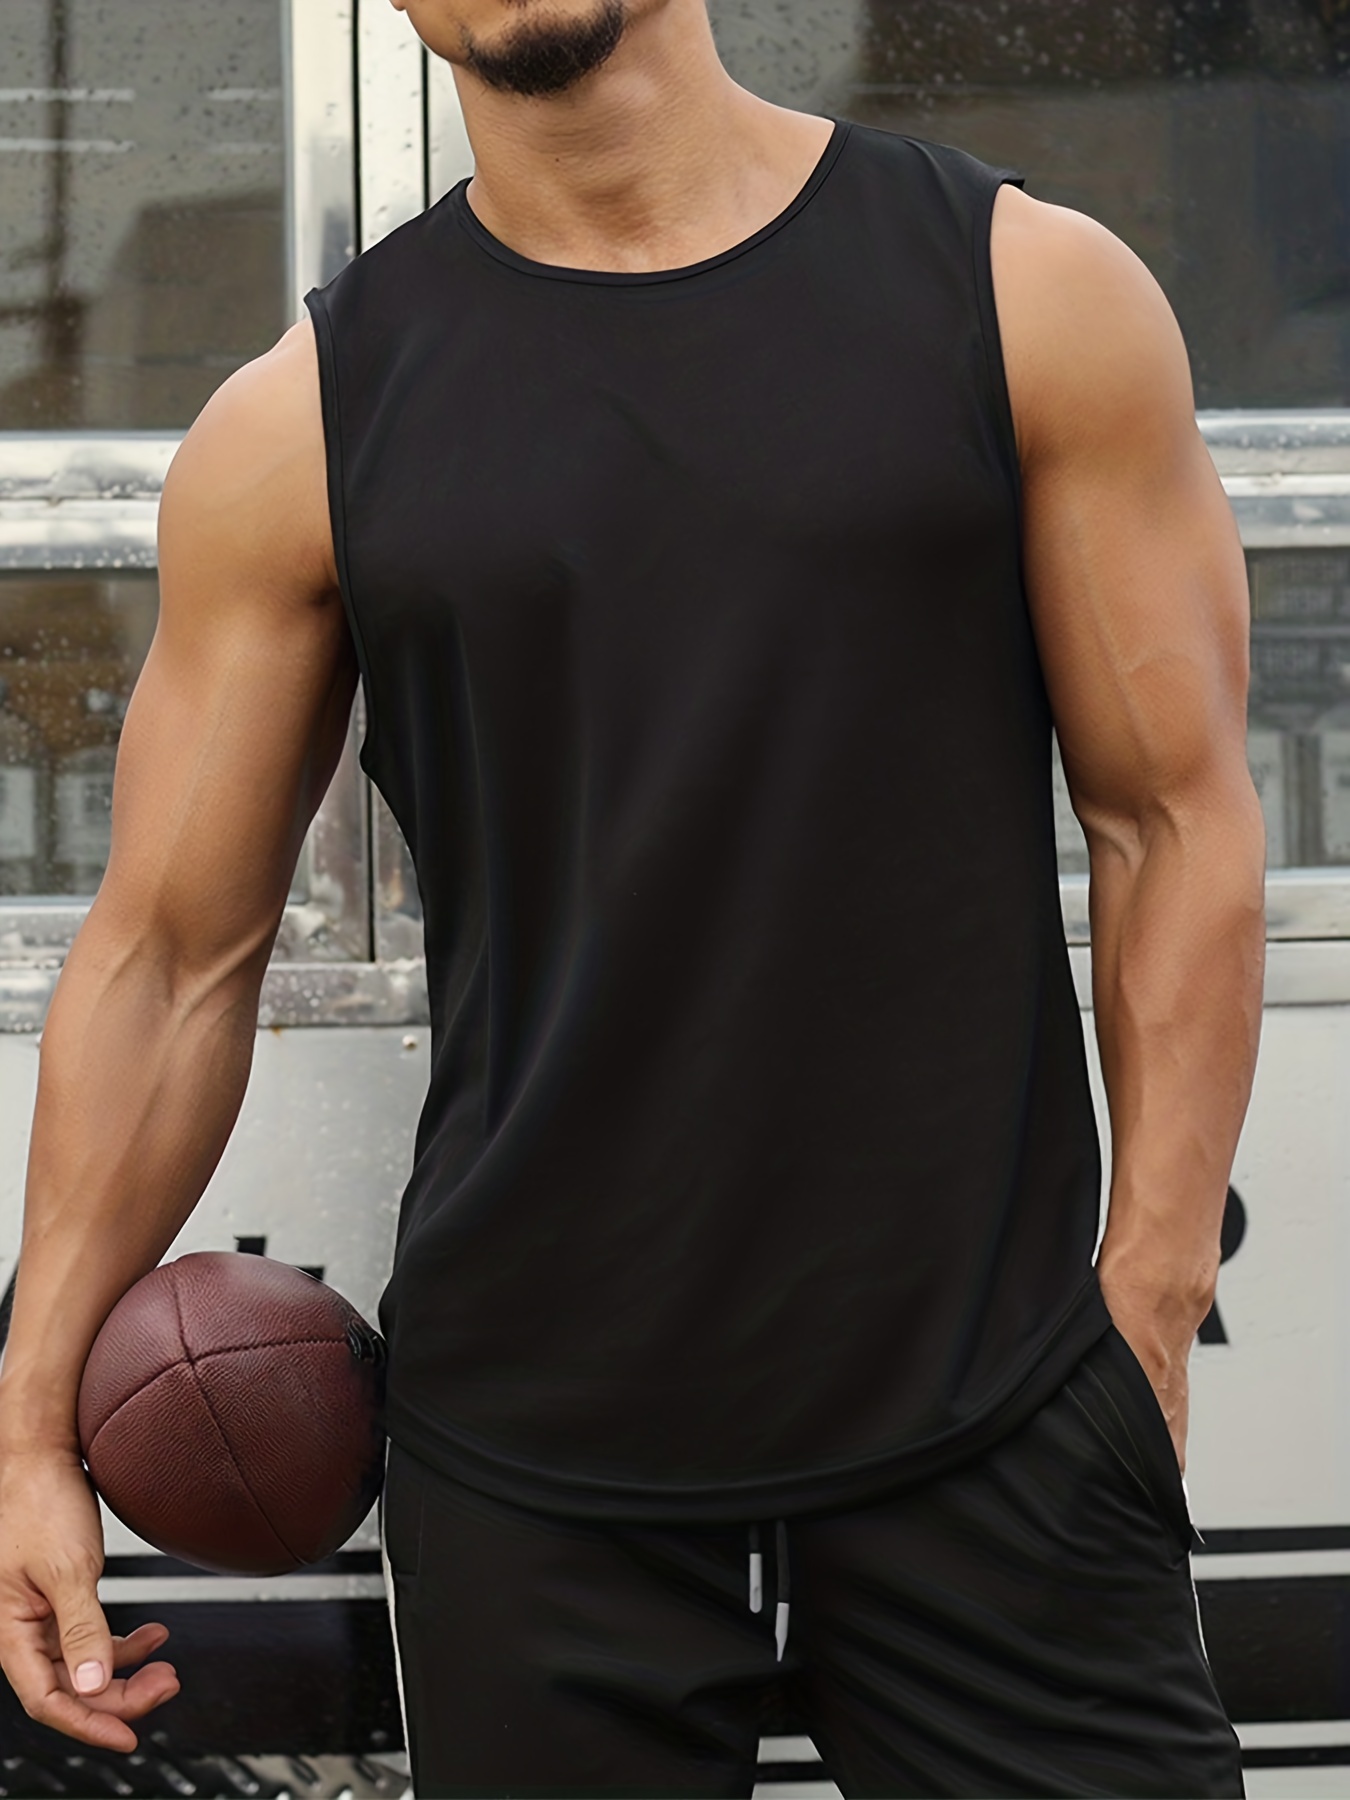 Camiseta masculina transpirable de tirantes anchos para deporte